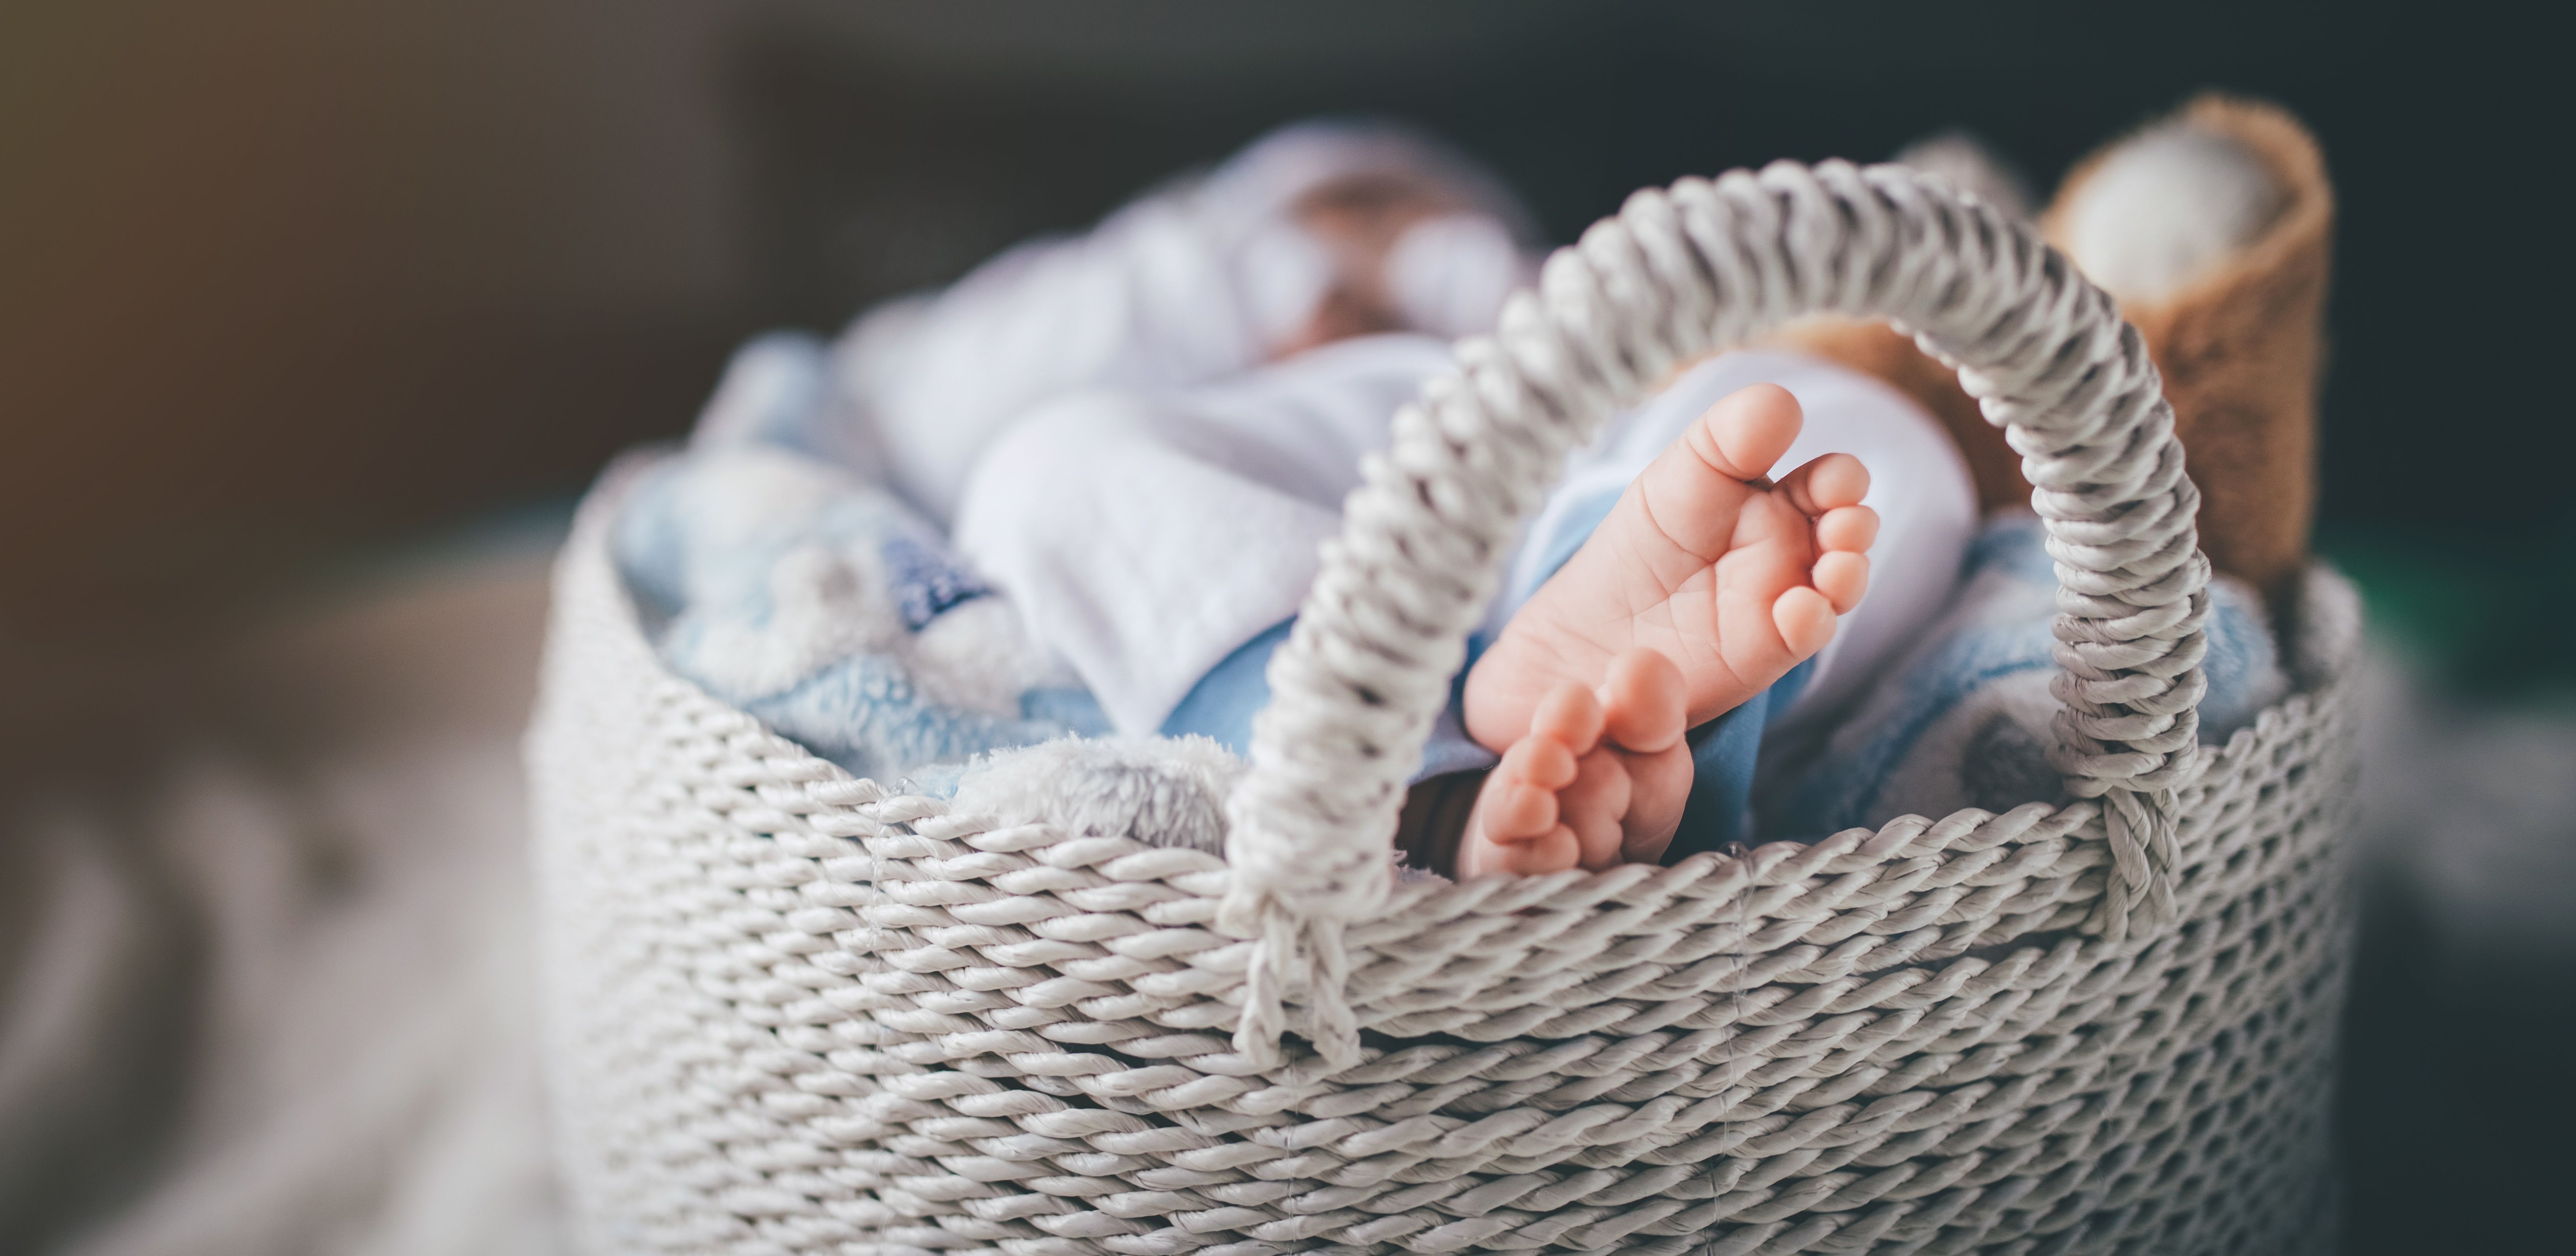 Los pies de un recién nacido en una cesta. | Foto: Getty Images